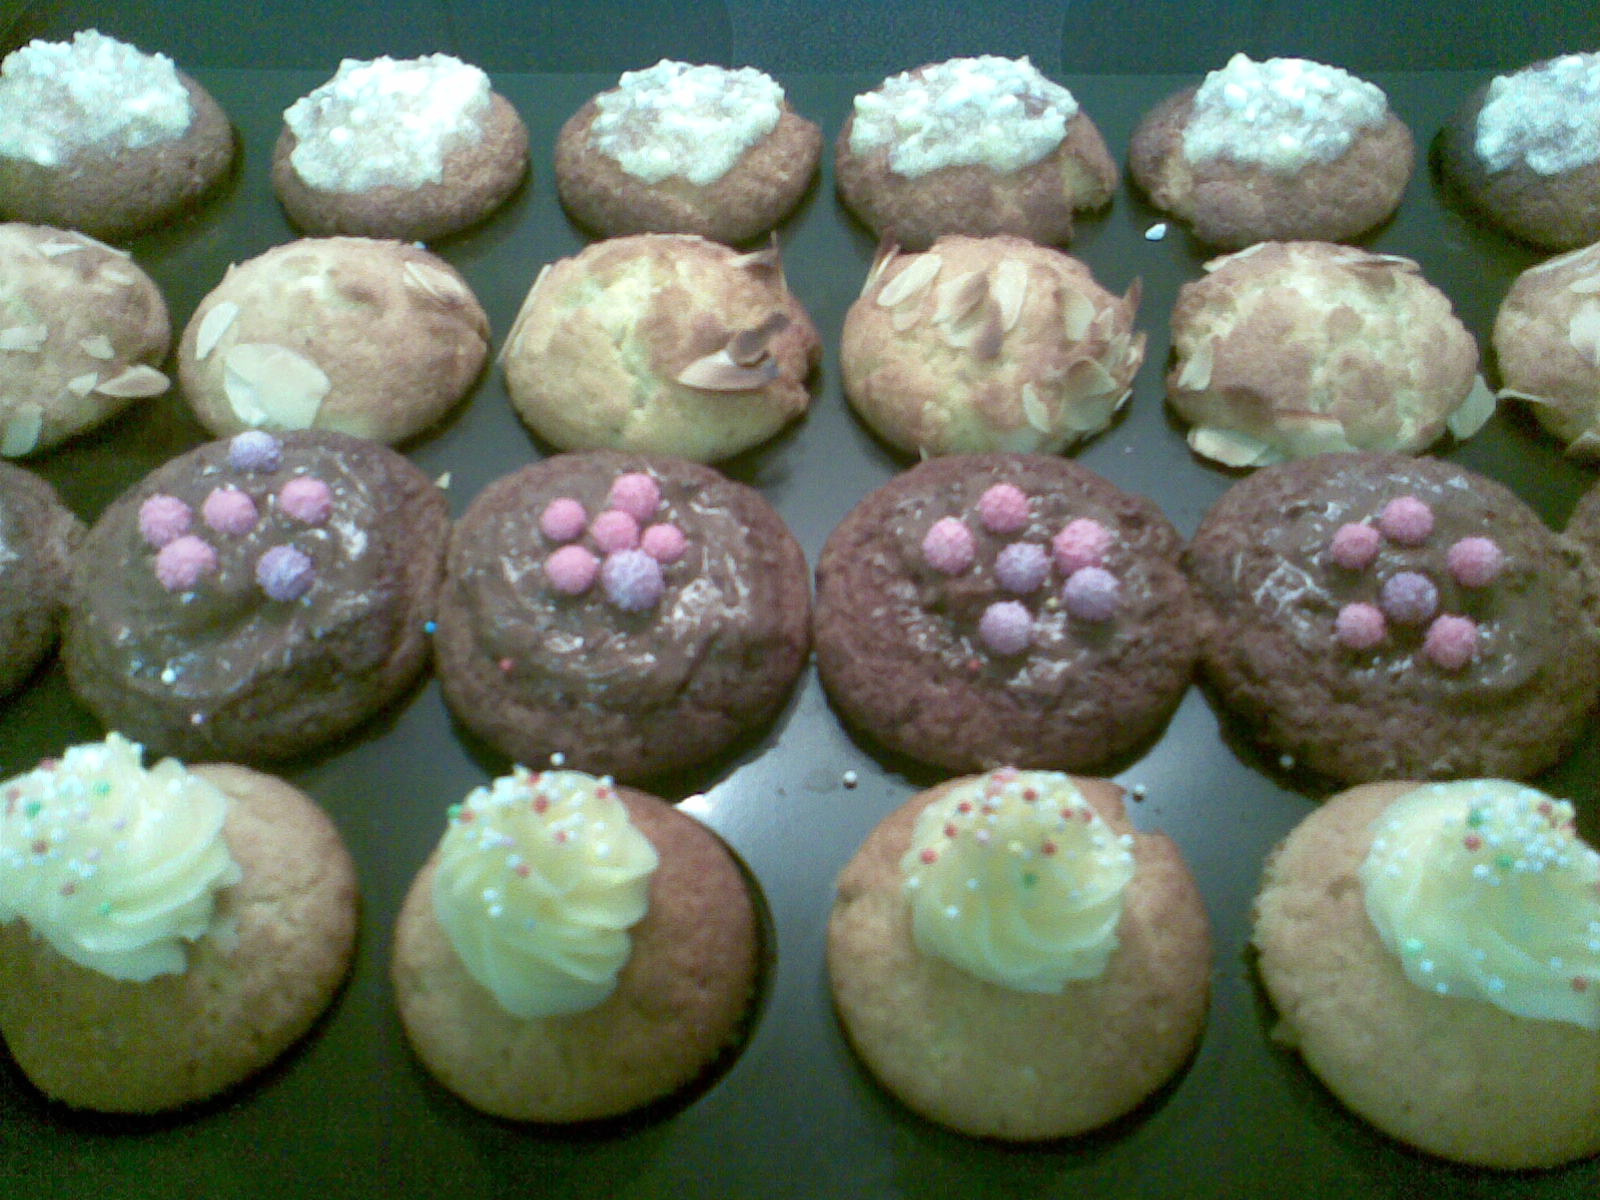 Mini-Muffins